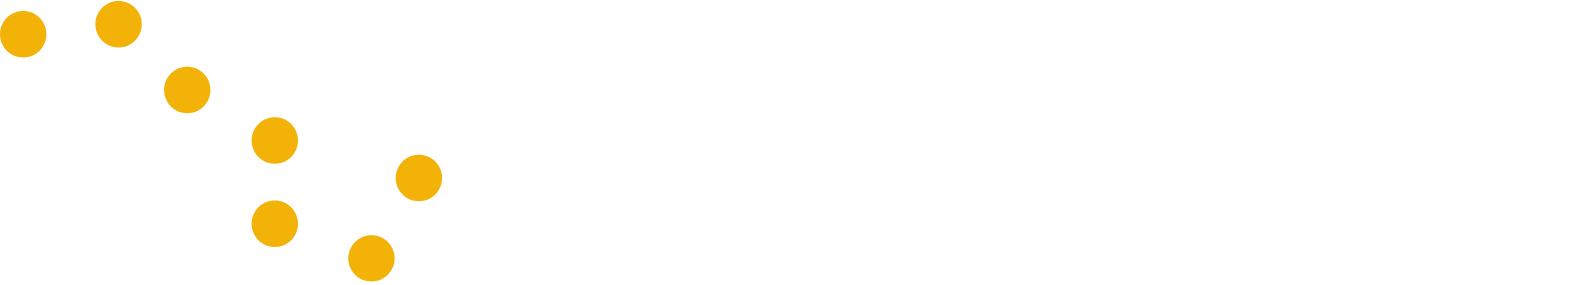 Iridium Communications logo grand pour les fonds sombres (PNG transparent)